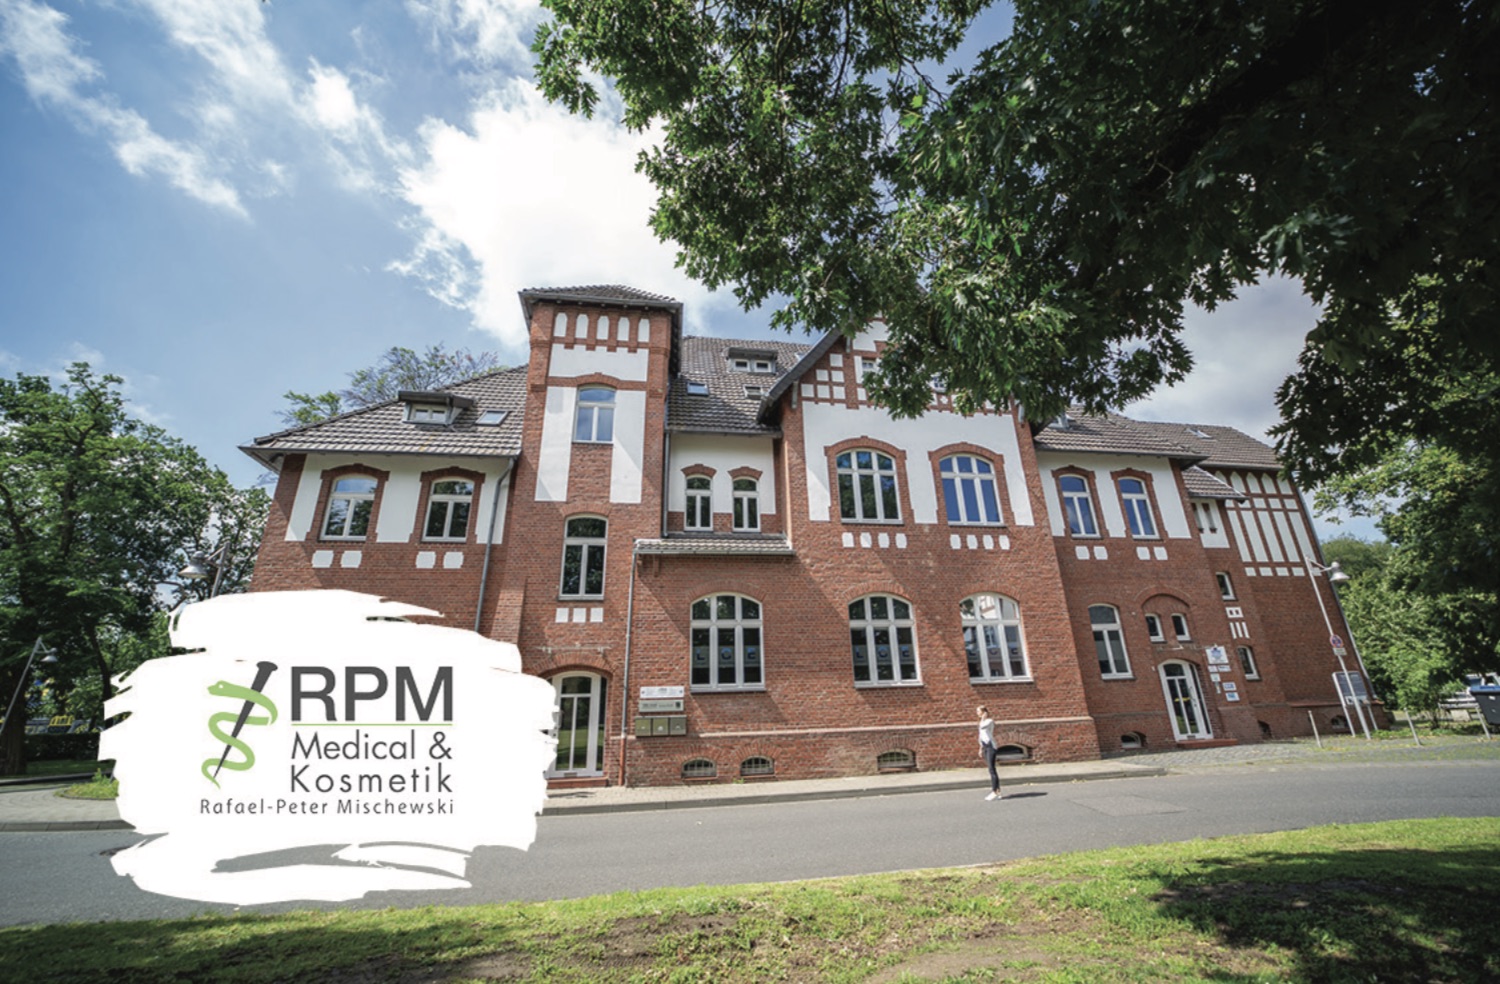 Sie finden uns am Konrad-Zuse-Ring 1 in 41179 Mönchengladbach  (wir verfügen über zwei Haupteingänge, bitte nutzen Sie immer den rechten Haupteingang und klingeln bei RPM Medical & Kosmetik) | RPM Medical & Kosmetik Rafael-Peter Mischewski Mönchengladbach